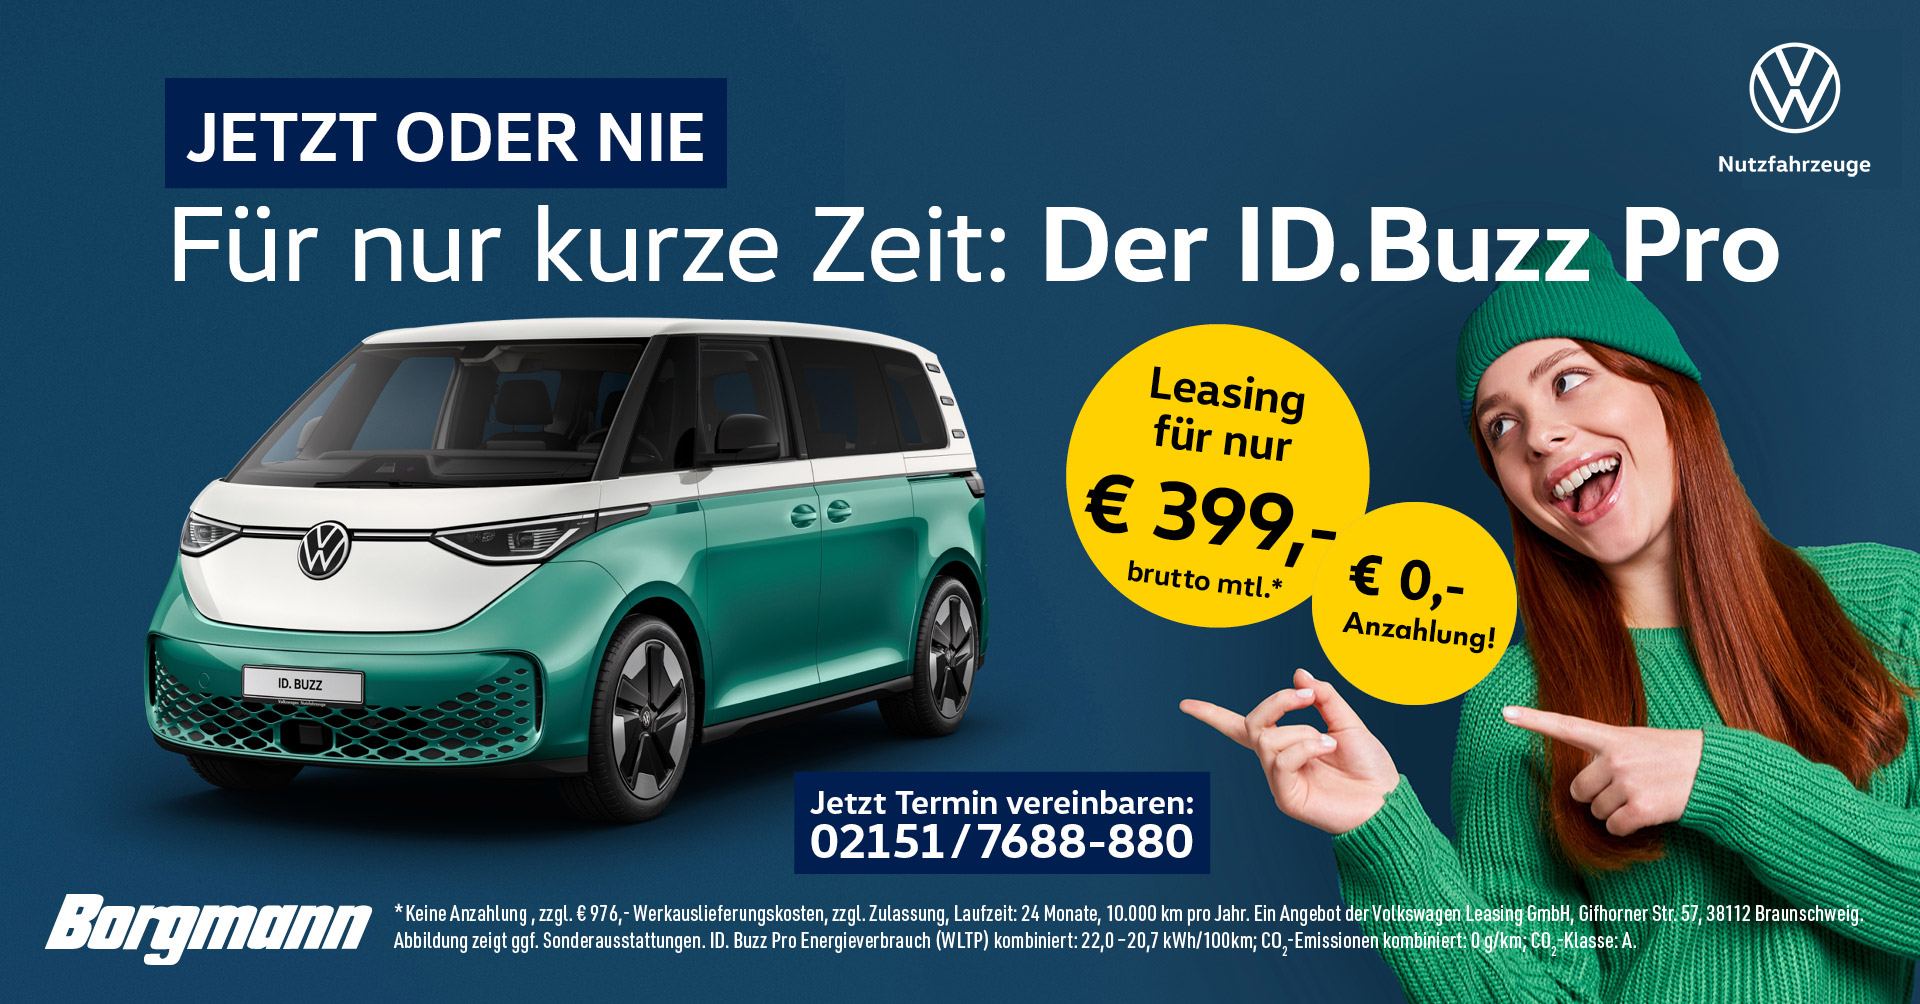 VW ID.Buzz jetzt für 399,-€ leasen!